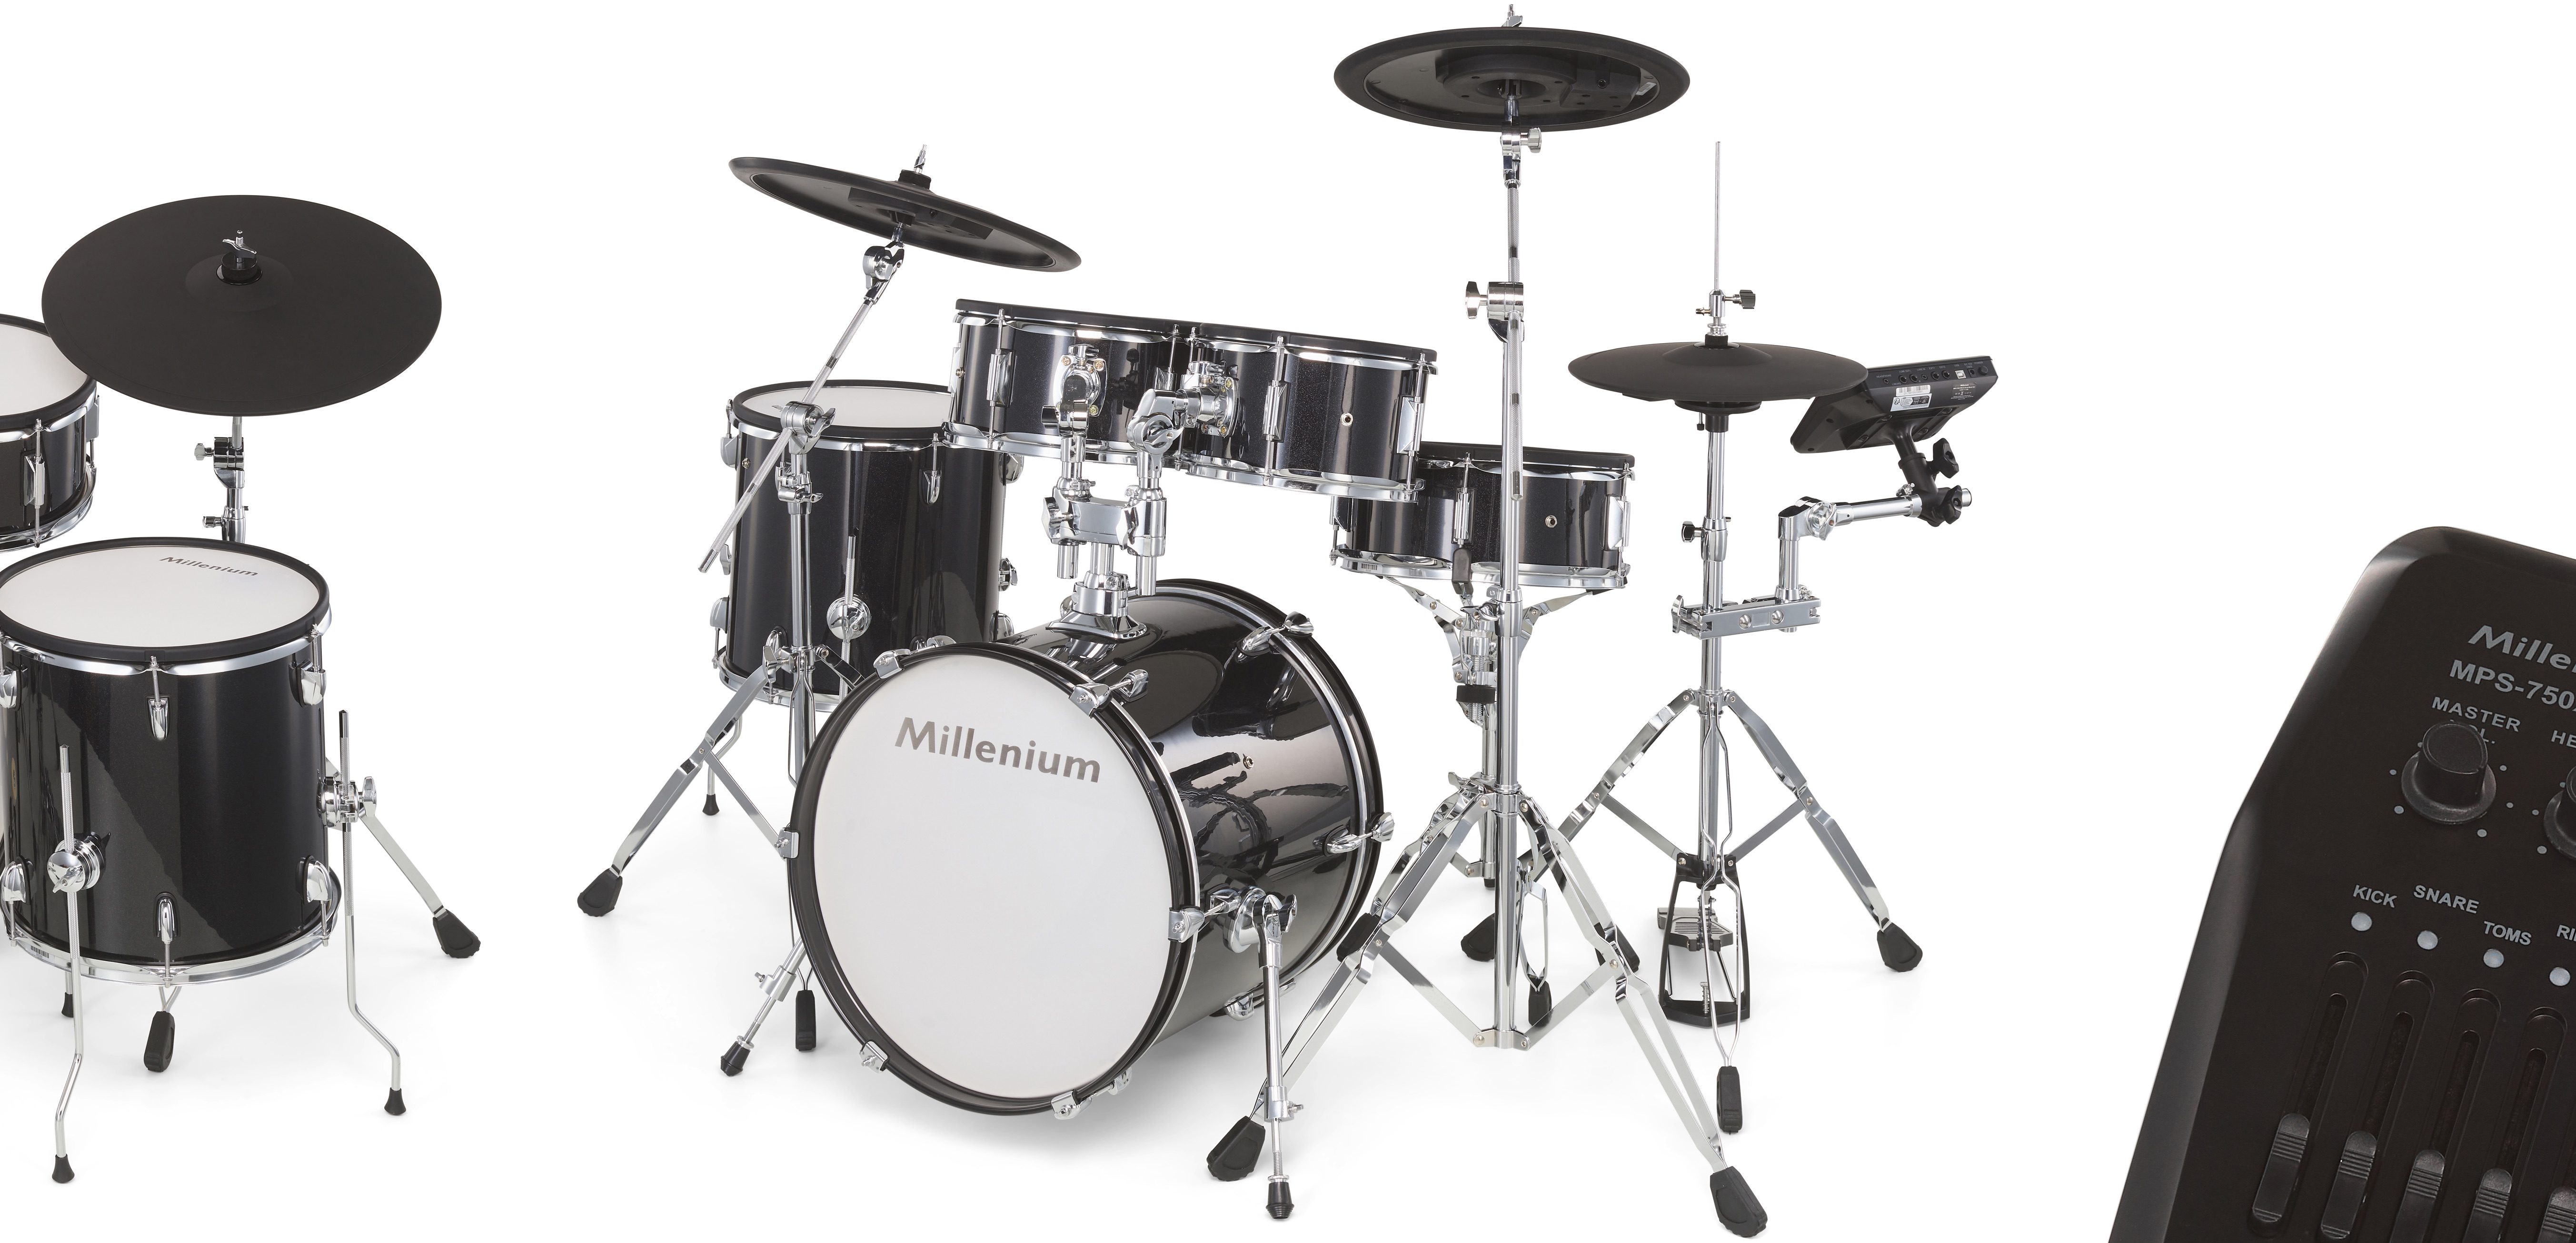 Millenium MPS-750X Pro, E-Drums